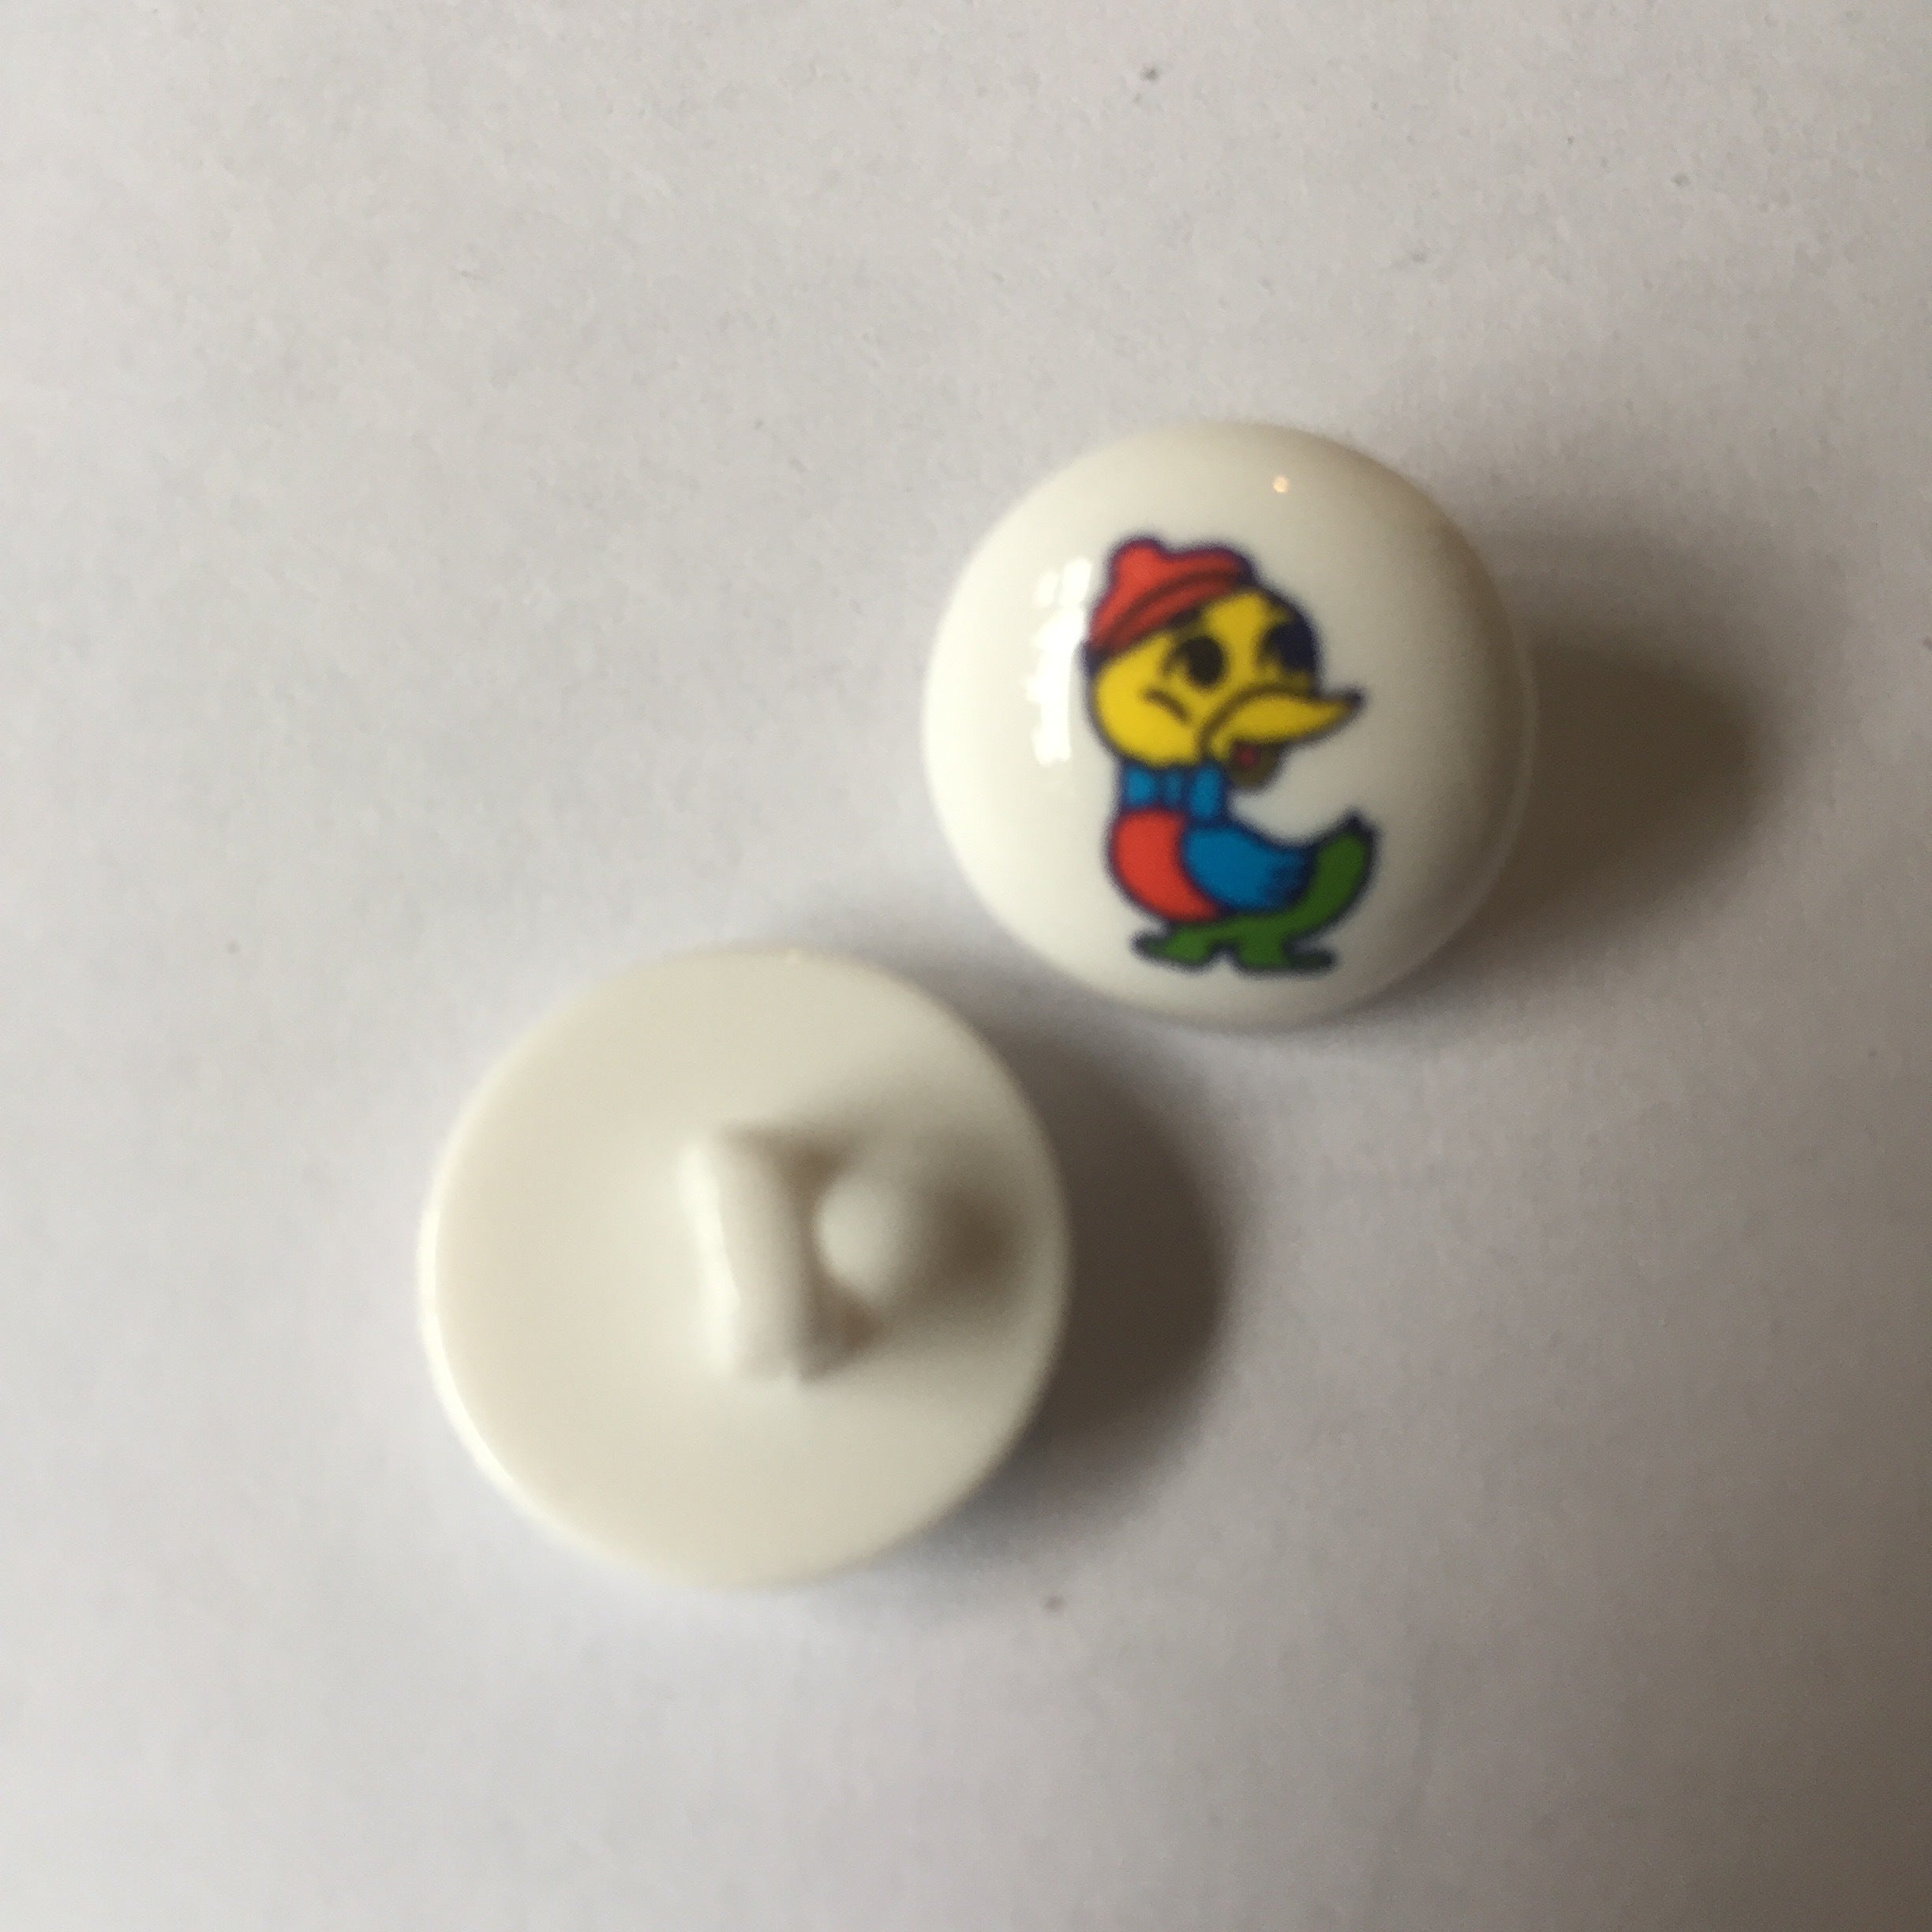 Ducky motif Buttons